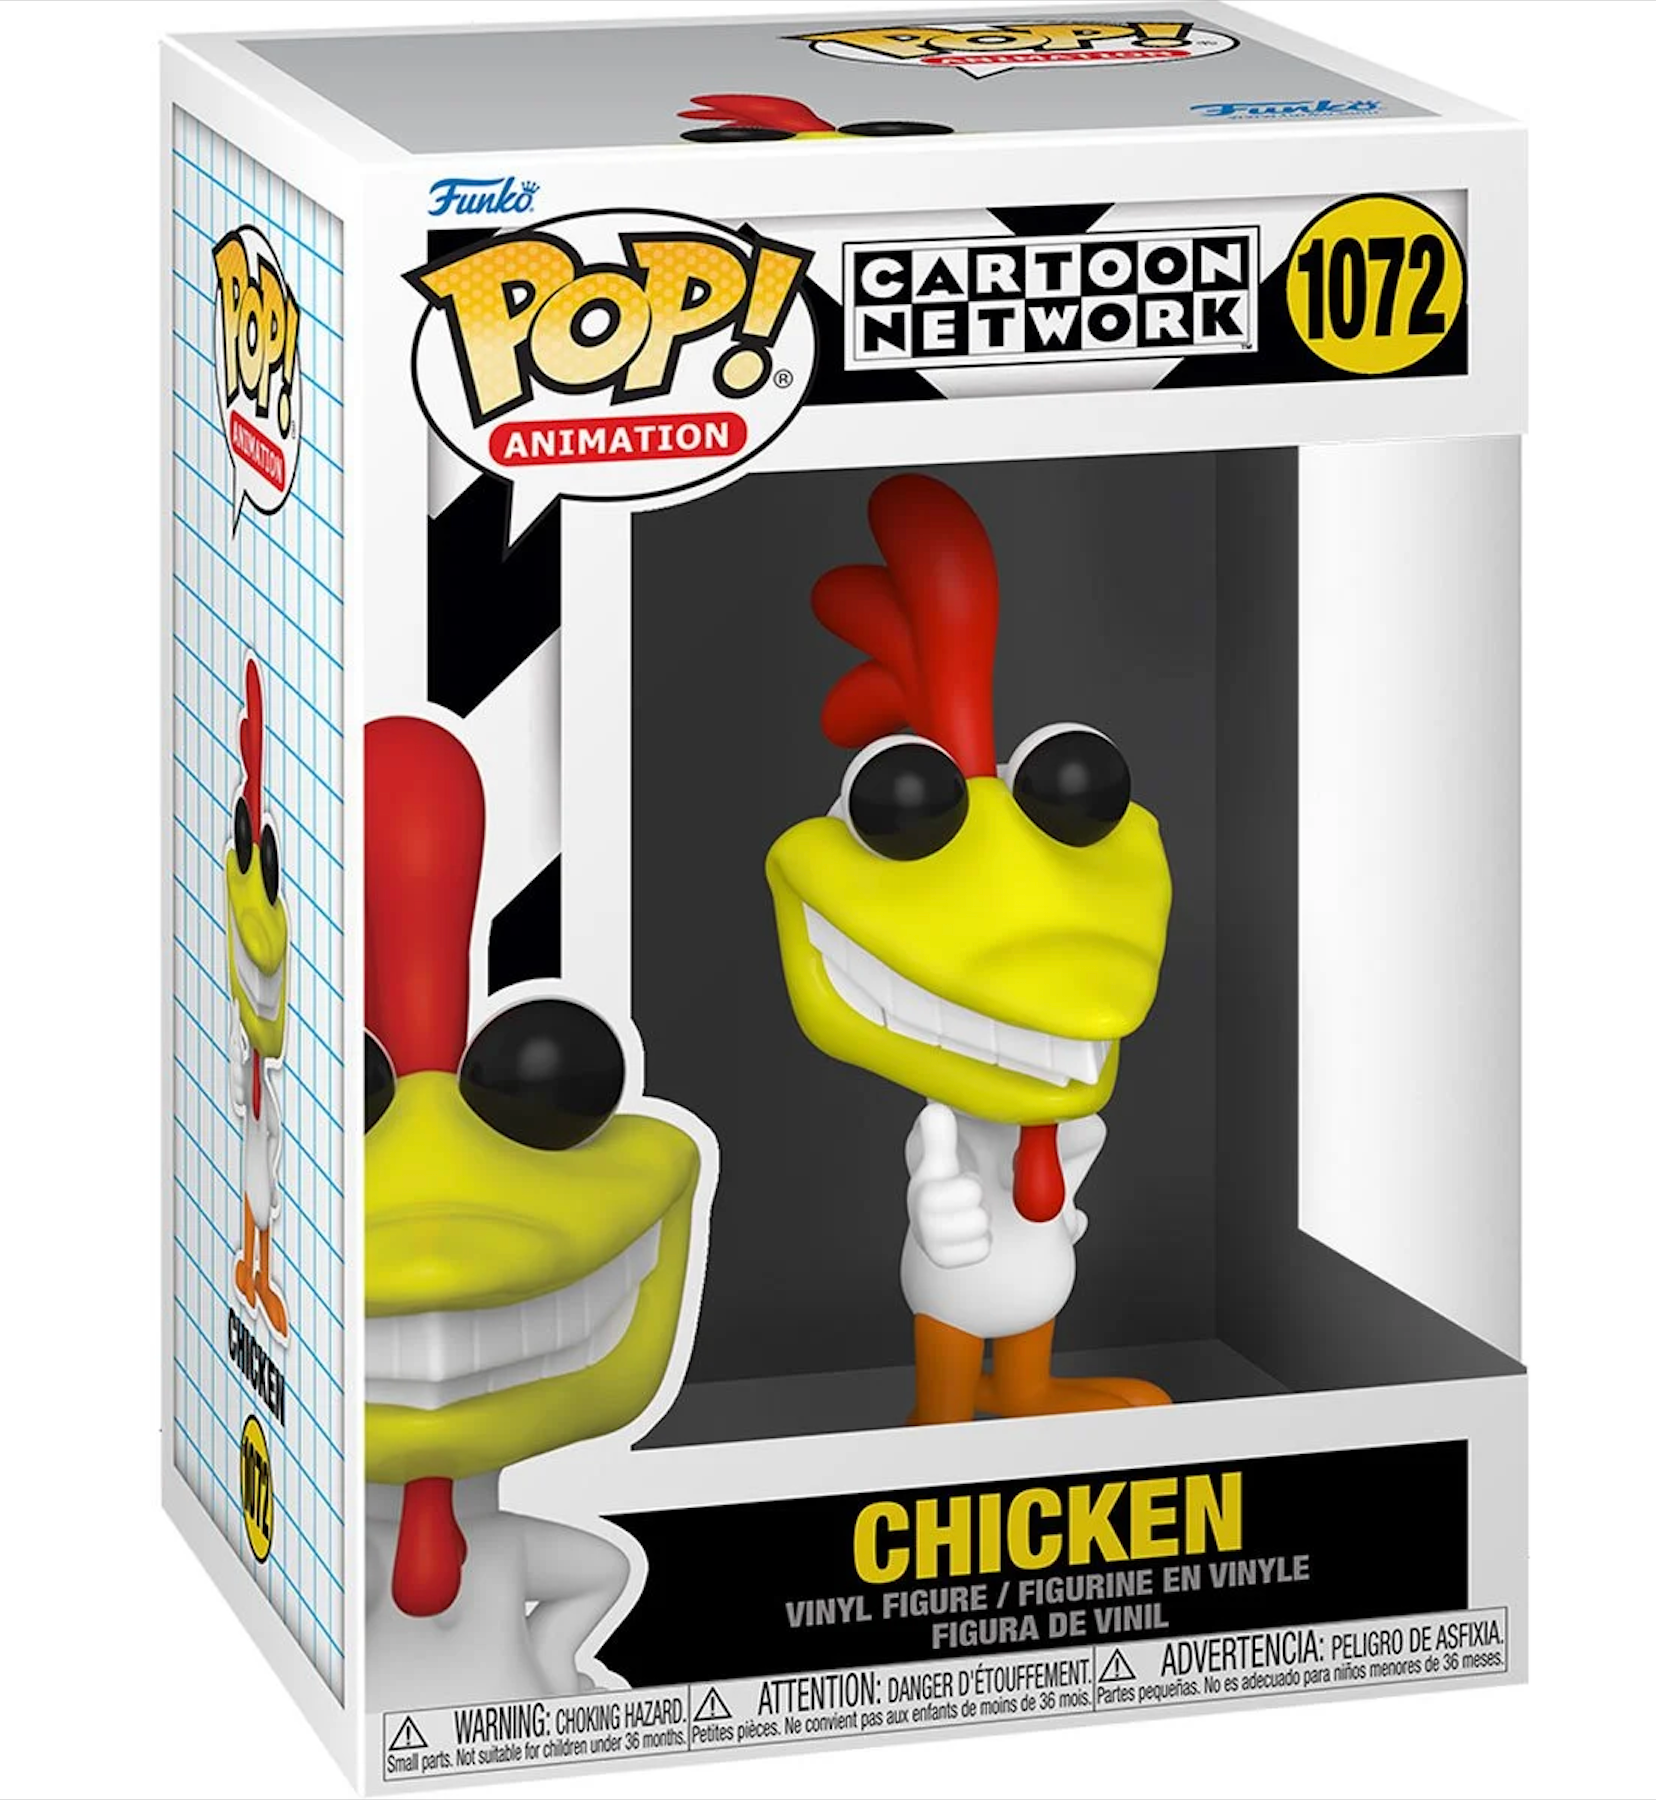 Animation: Cartoon Network - Chicken Pop! Vinyl Figure (1072)